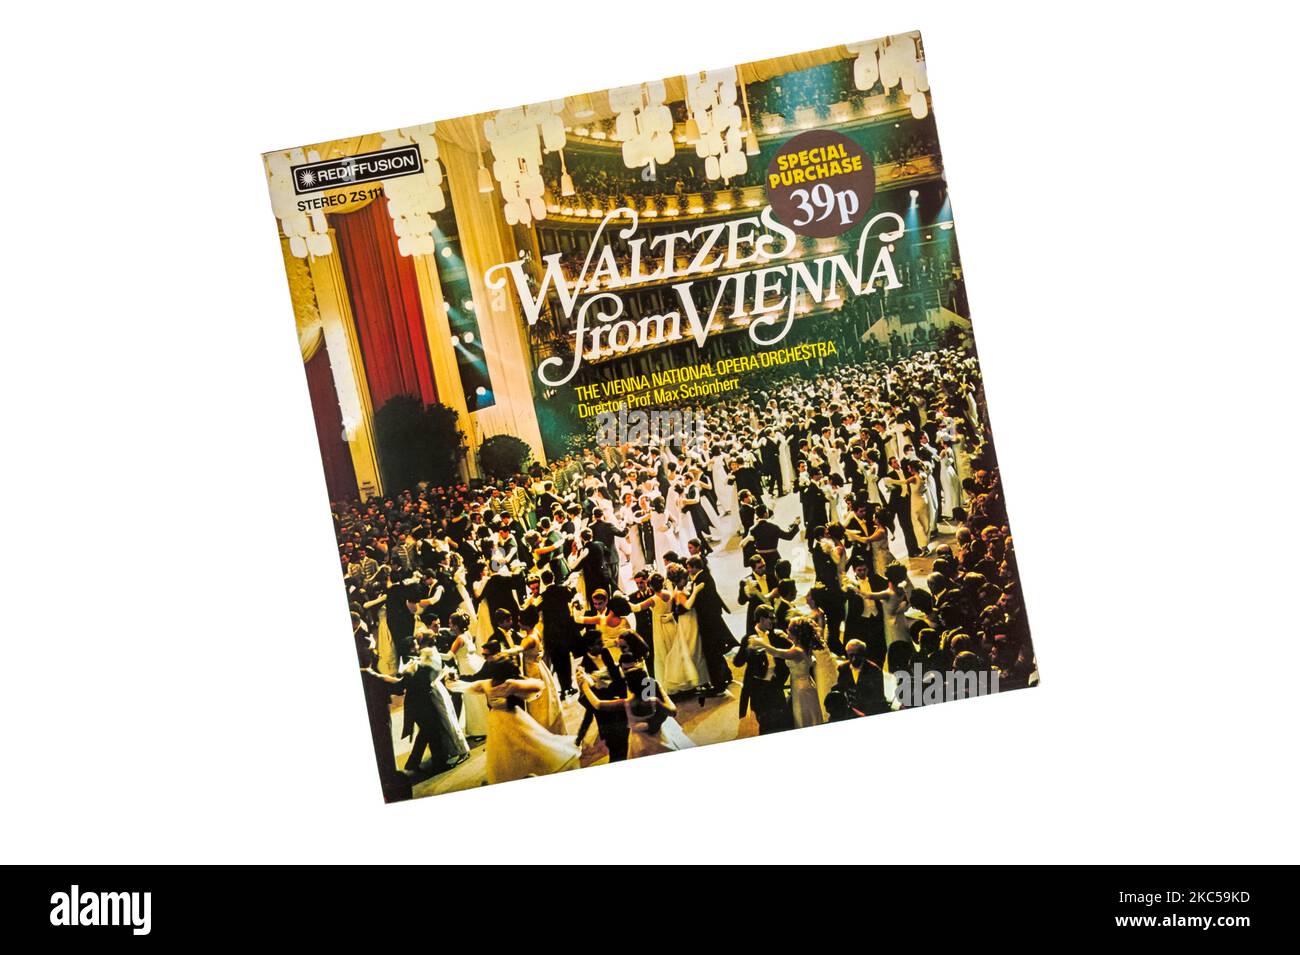 Ein Budget-Rekord von Walzern aus Wien im Jahr 1972 durch das Wiener Nationaloper Orchester unter der Leitung von Prof. Max Schönherr. Mit 39P Special Purchase Aufkleber. Stockfoto